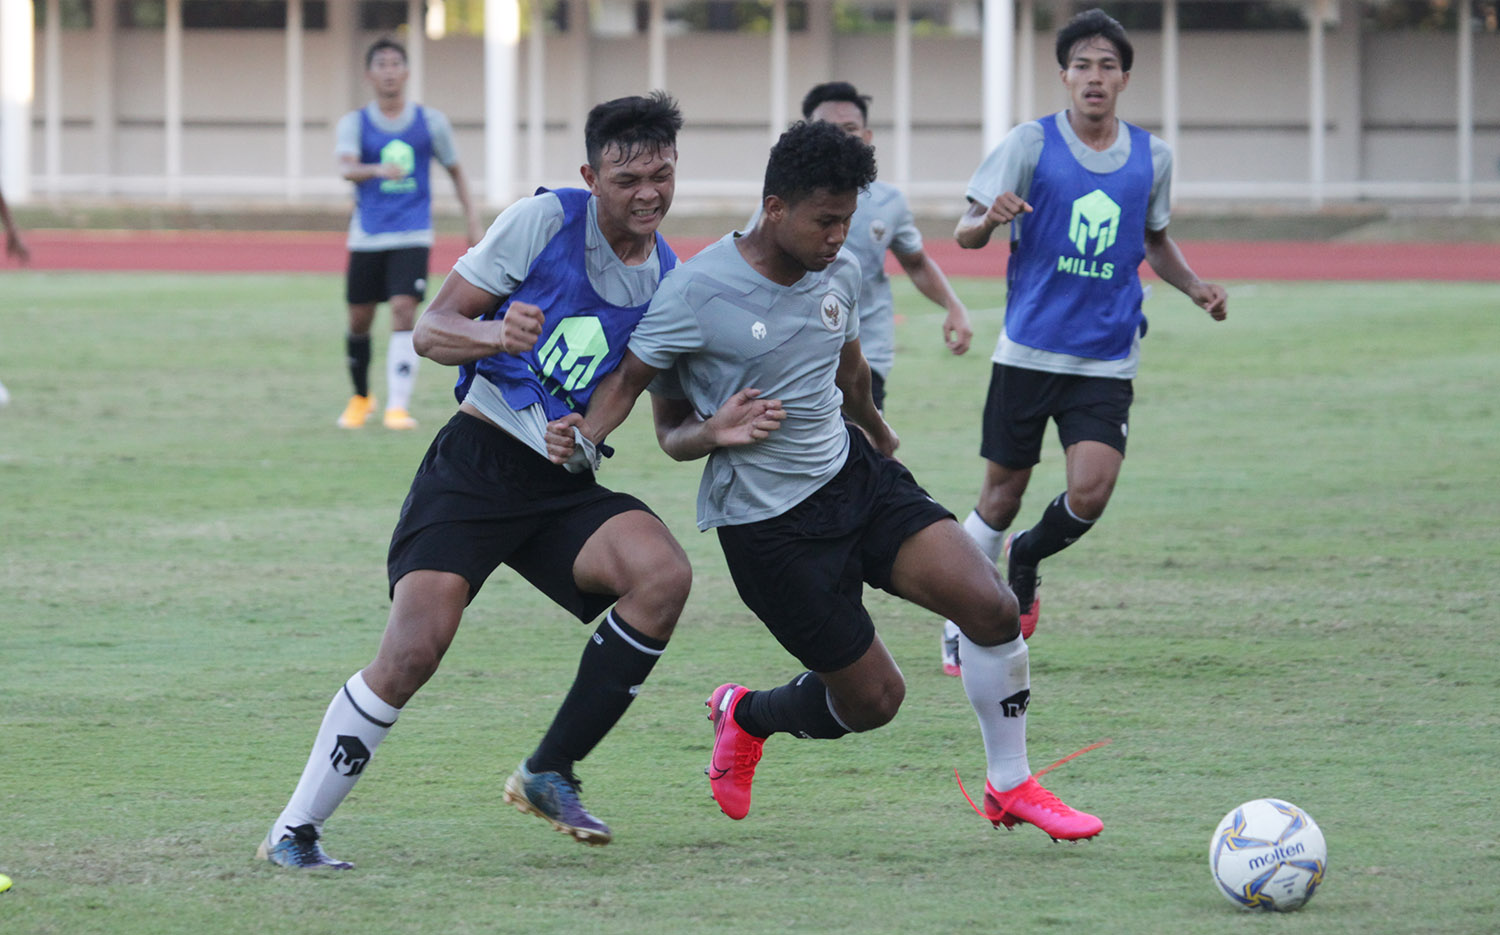 Calon Lawan Tanding Timnas Indonesia U-19 di Kroasia Bertambah Tiga